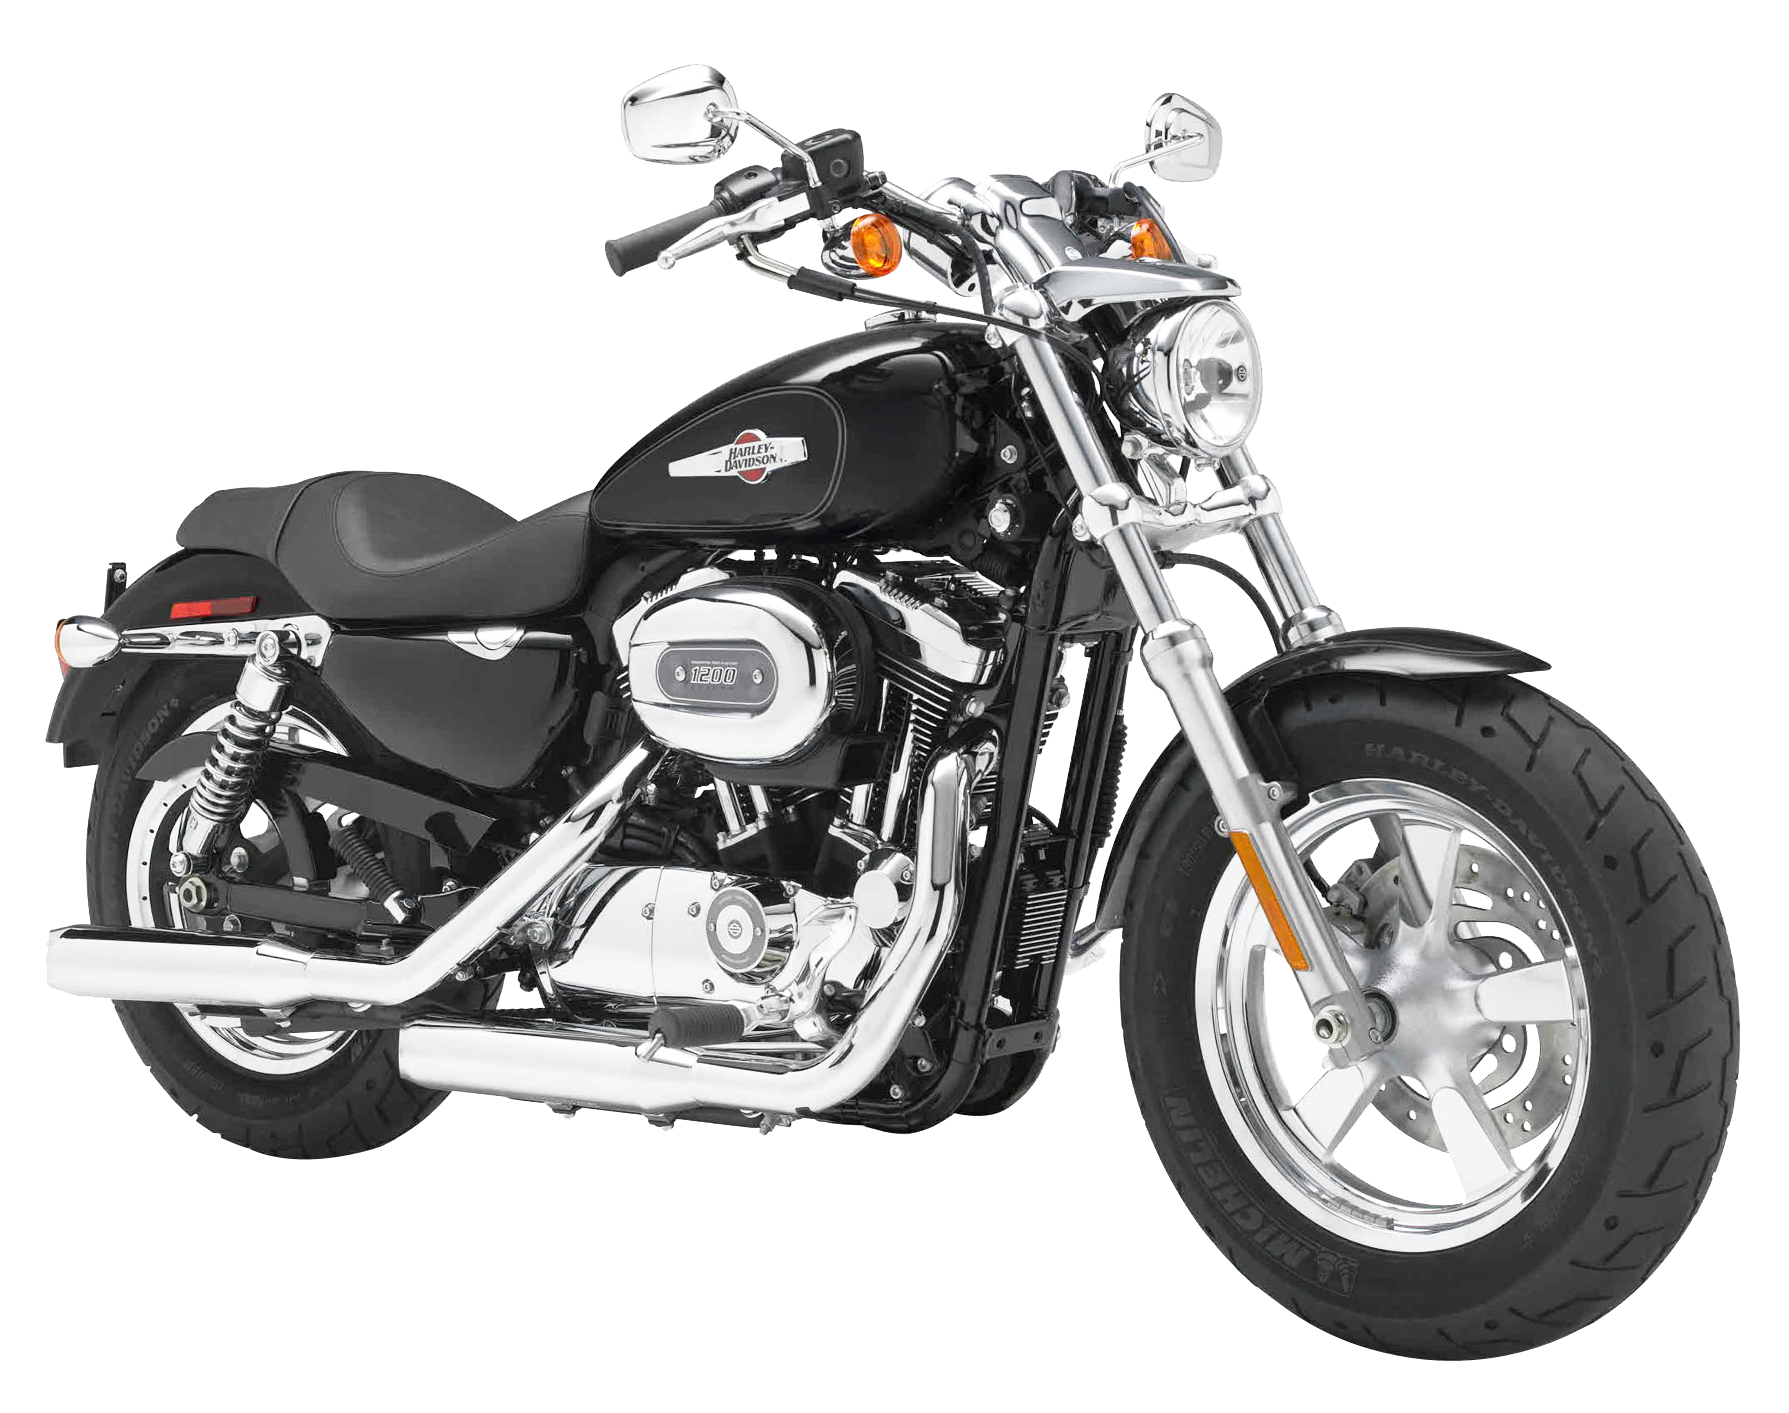 Harley Davidson Sportster 1200 PNG Image